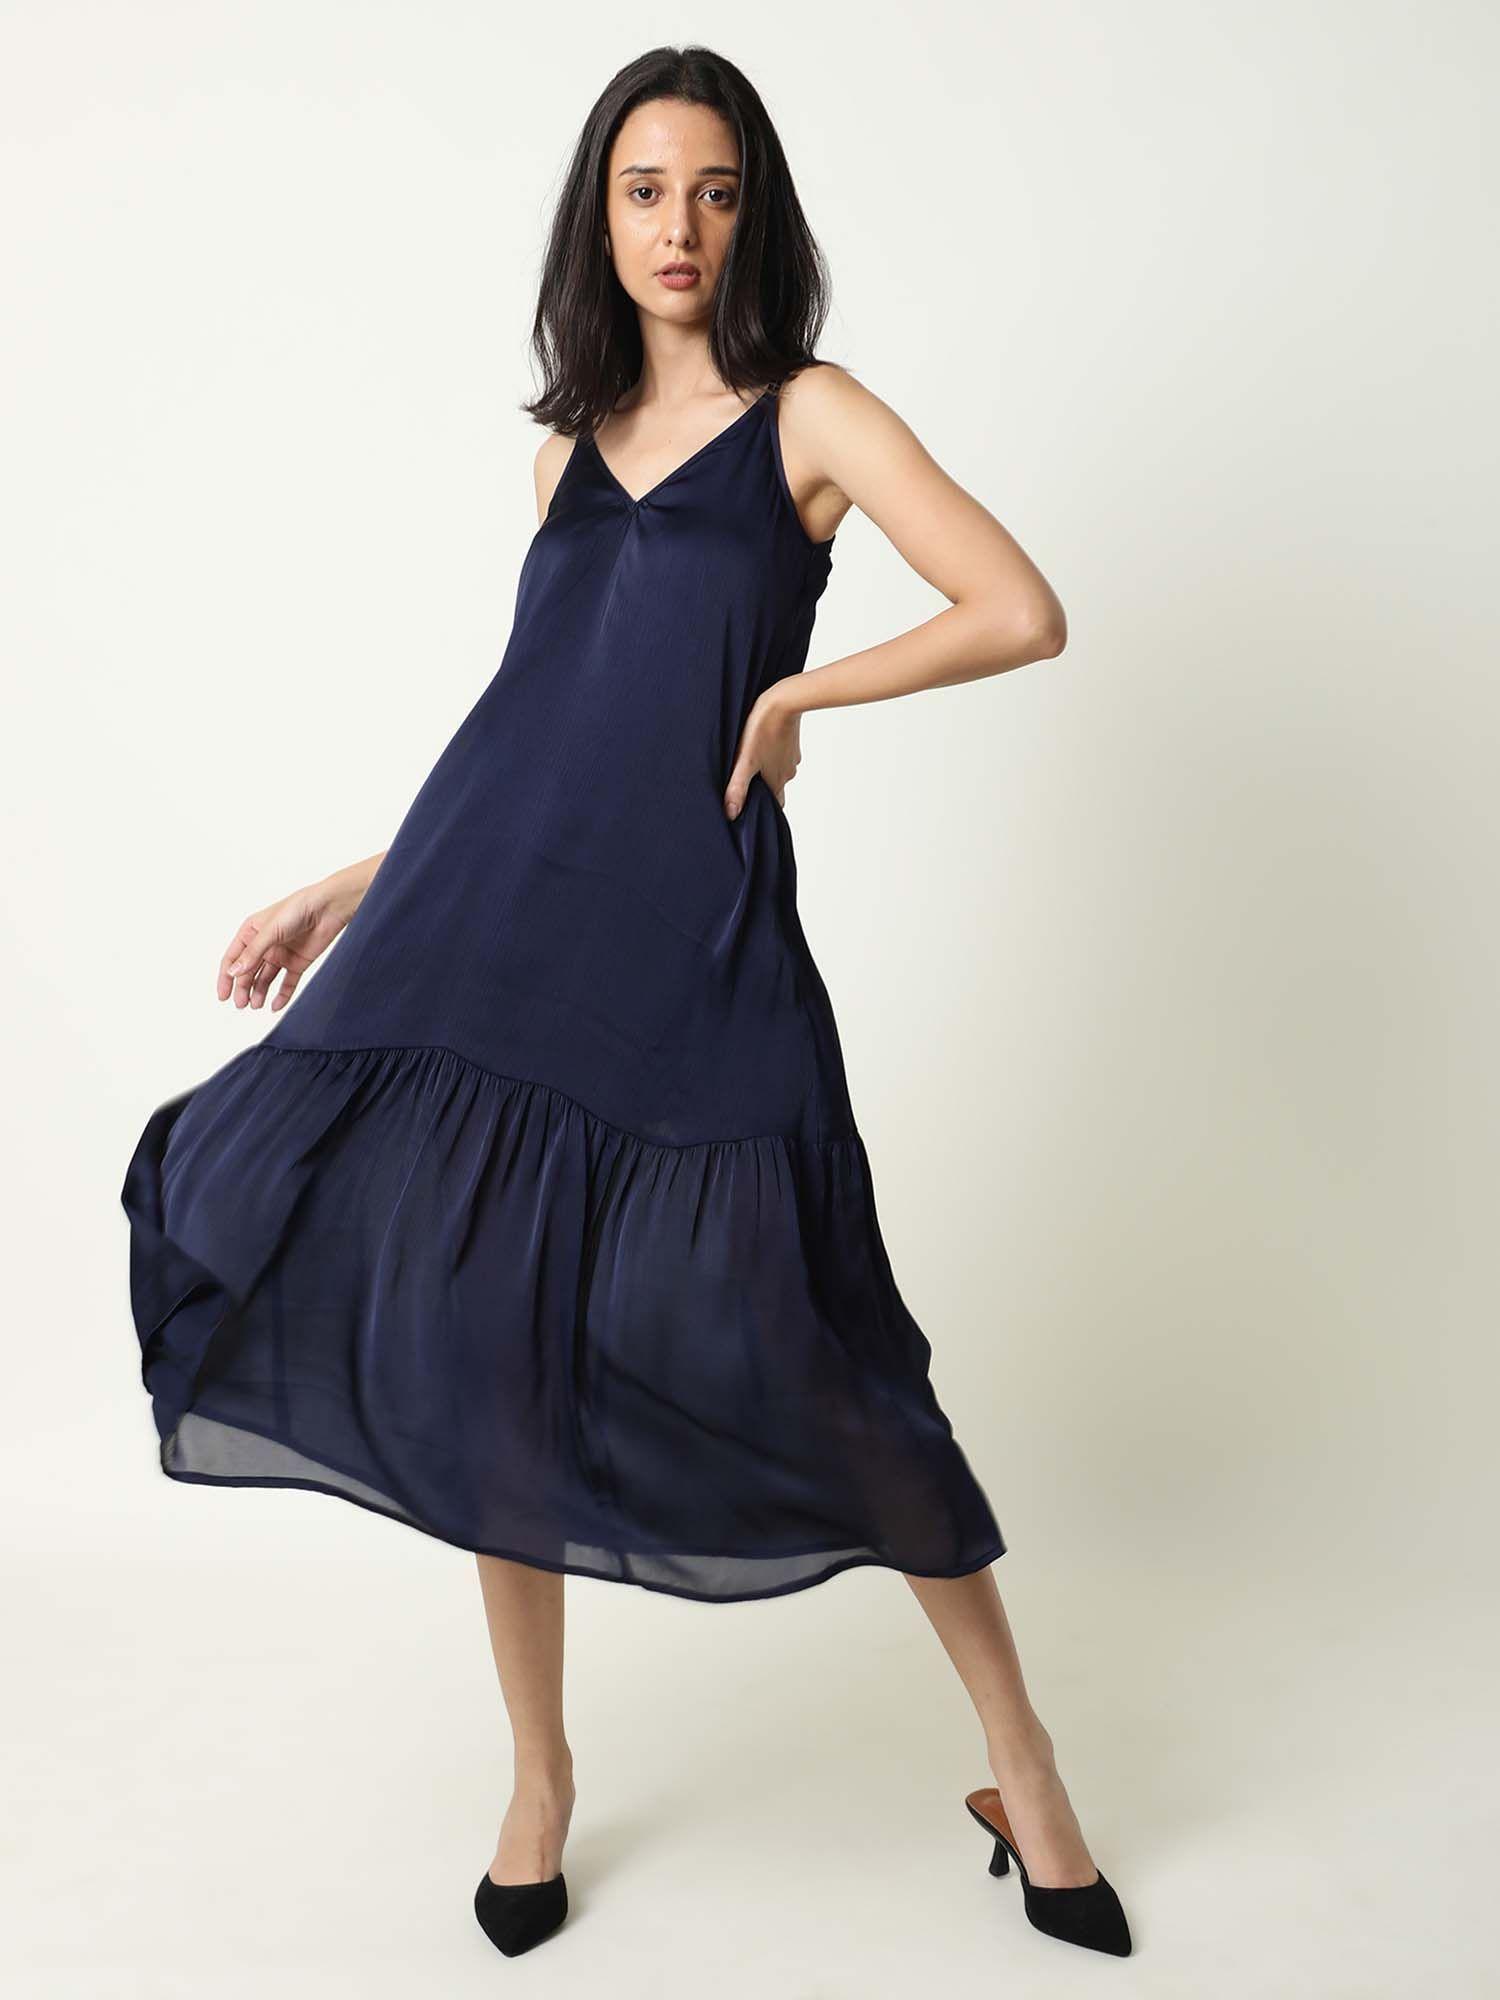 tint navy blue dress